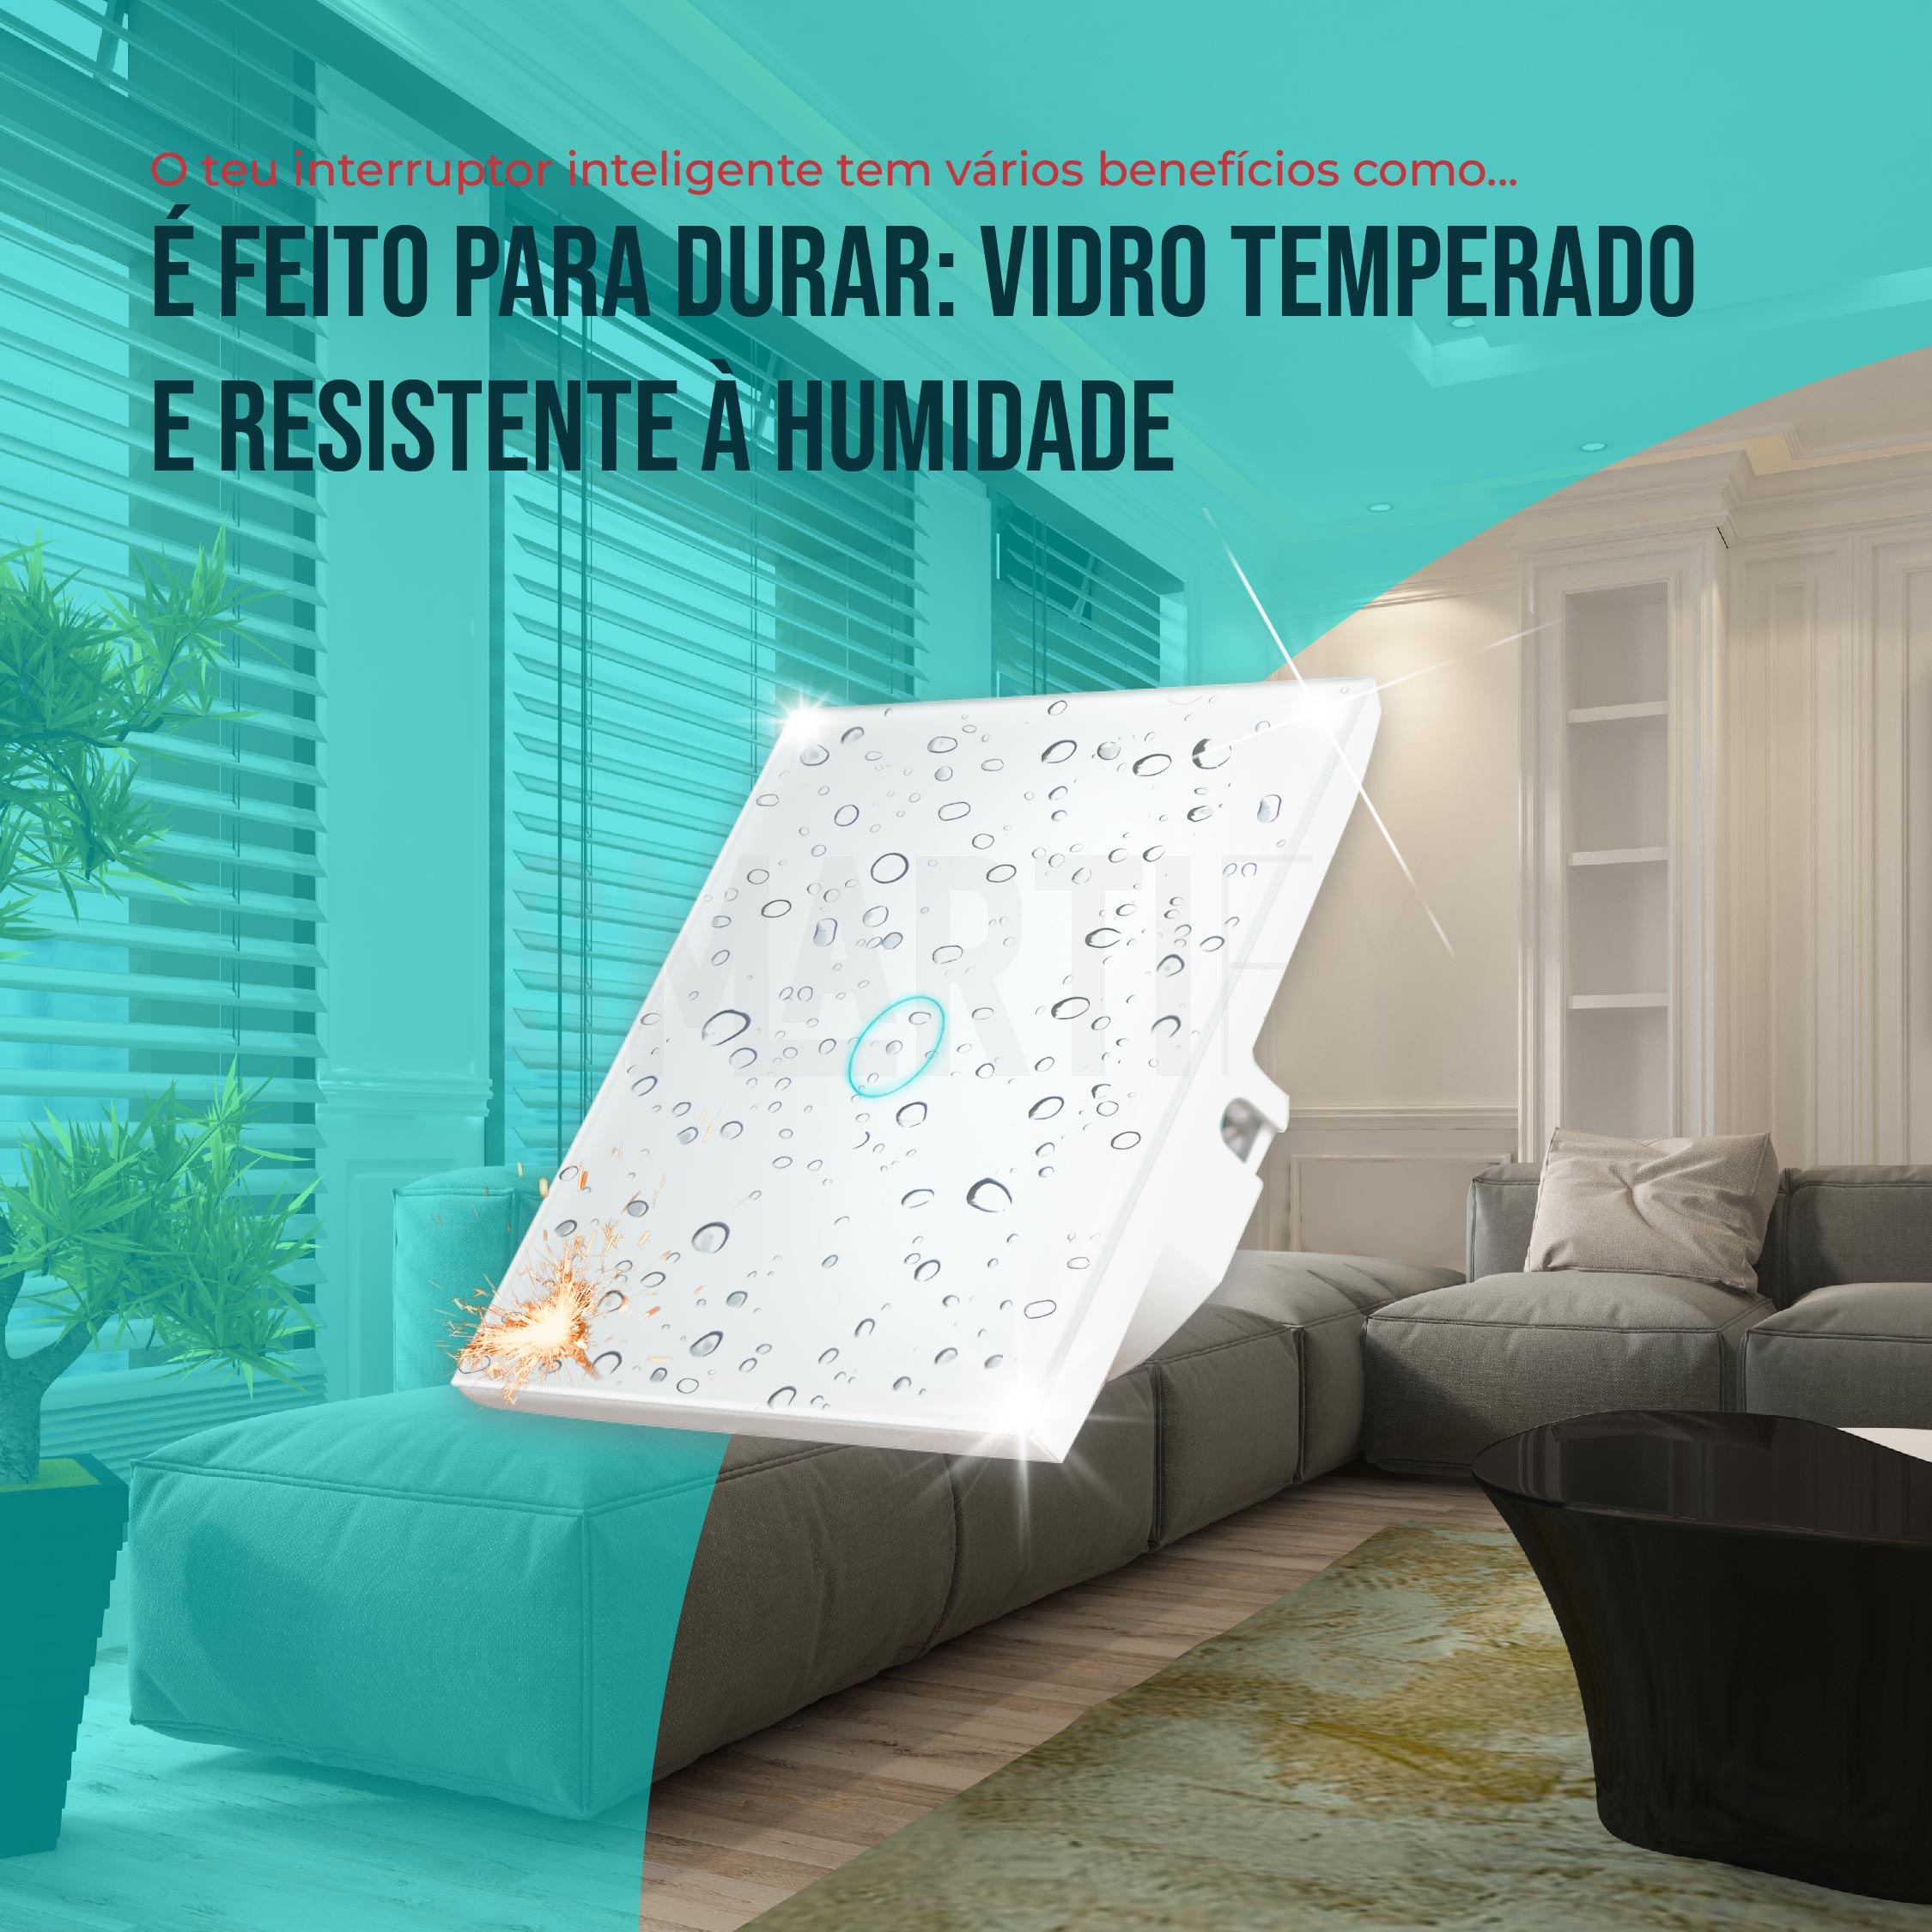 Kit de inicio Smartify WiFi para el hogar inteligente